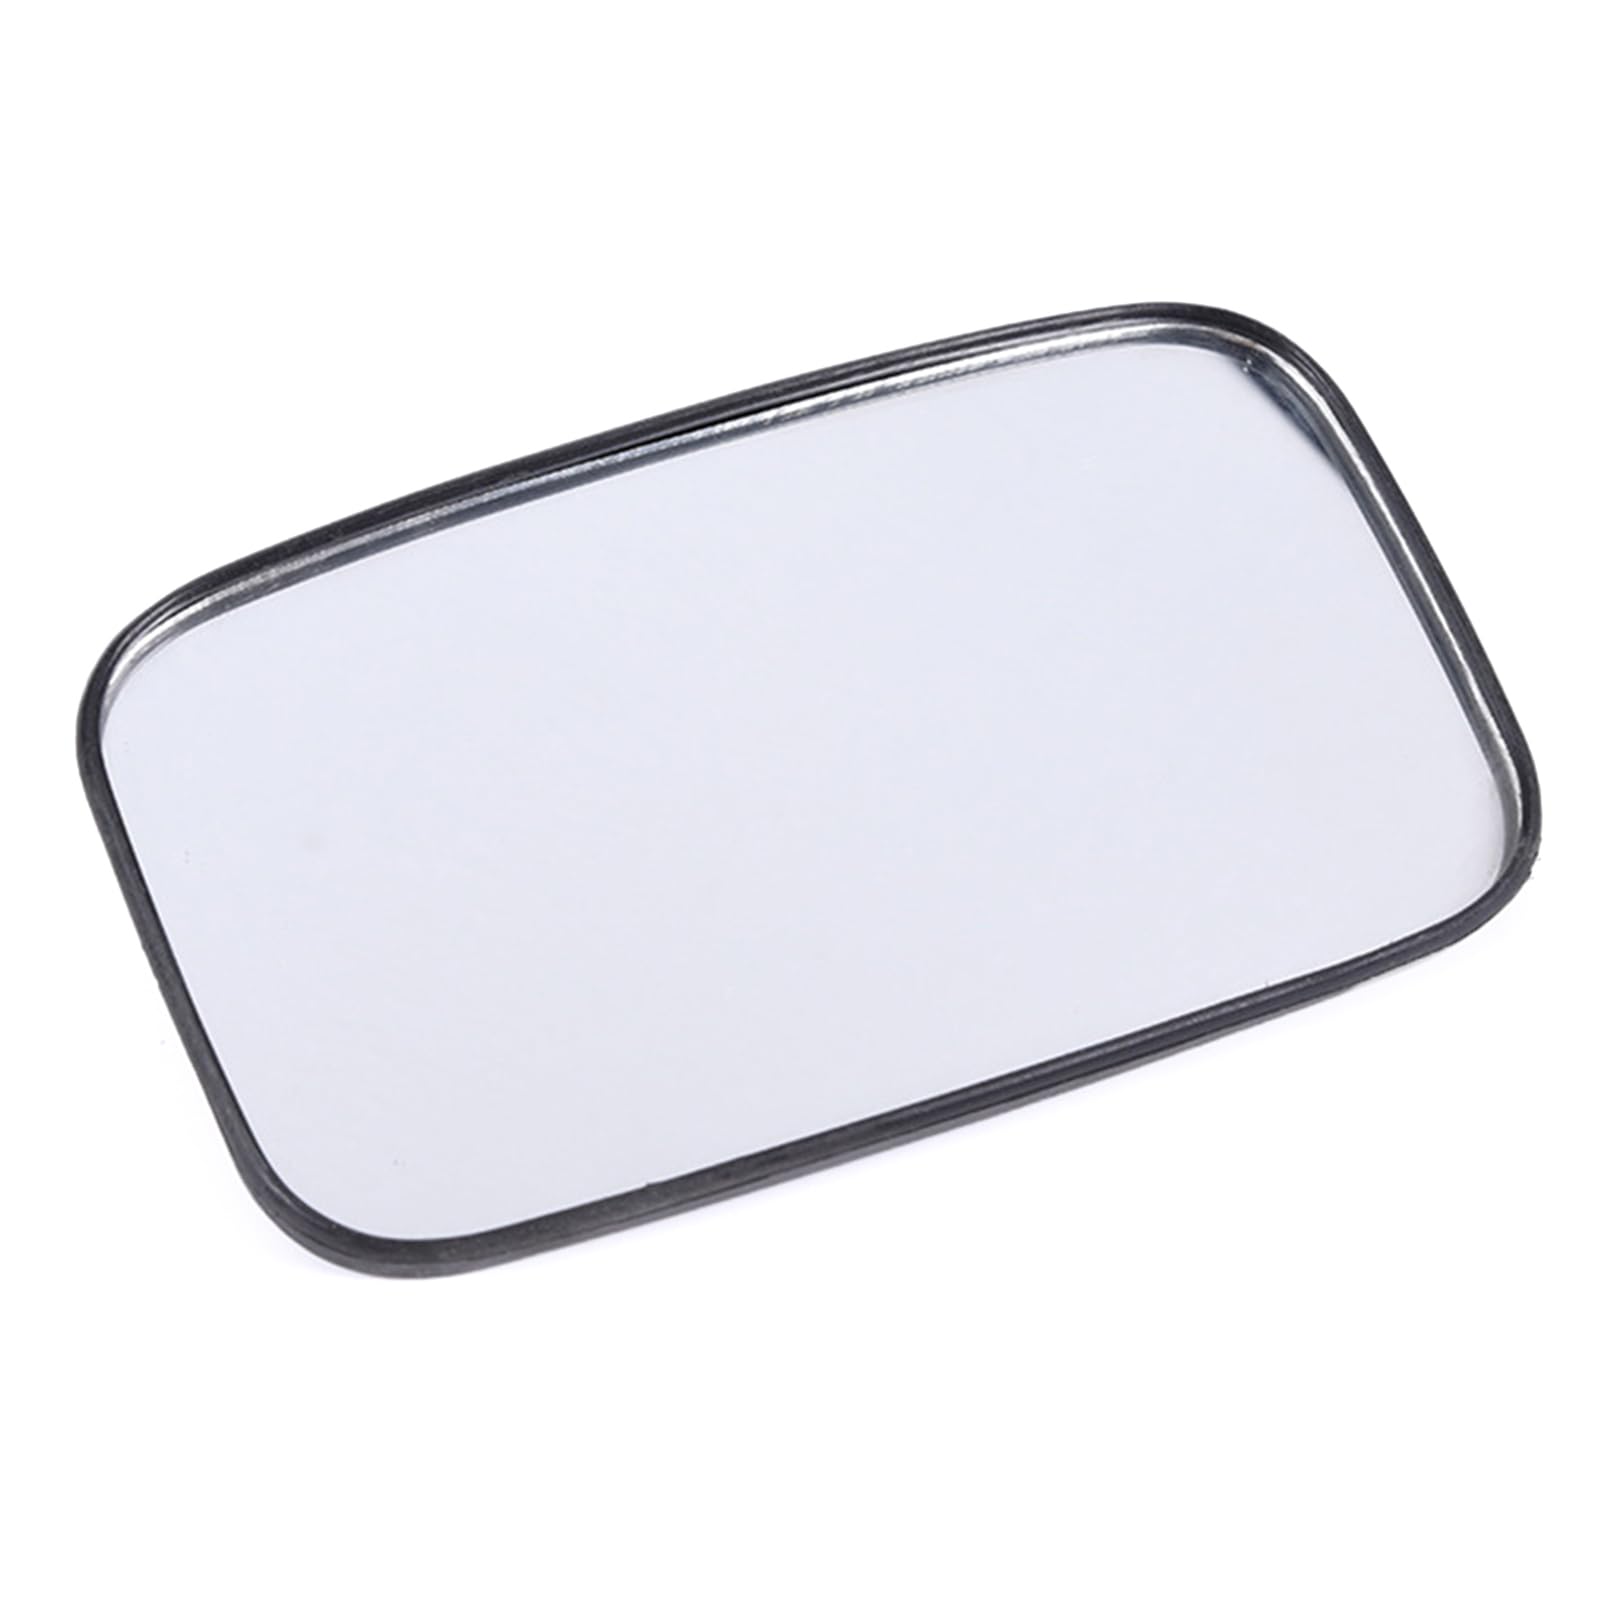 Verbessert Rückspiegelglas Weitwinkelglas Quadratisches Erweitert Die Sicht Rückspiegelglas LKWs Gabelstapler von YIAGXIVG